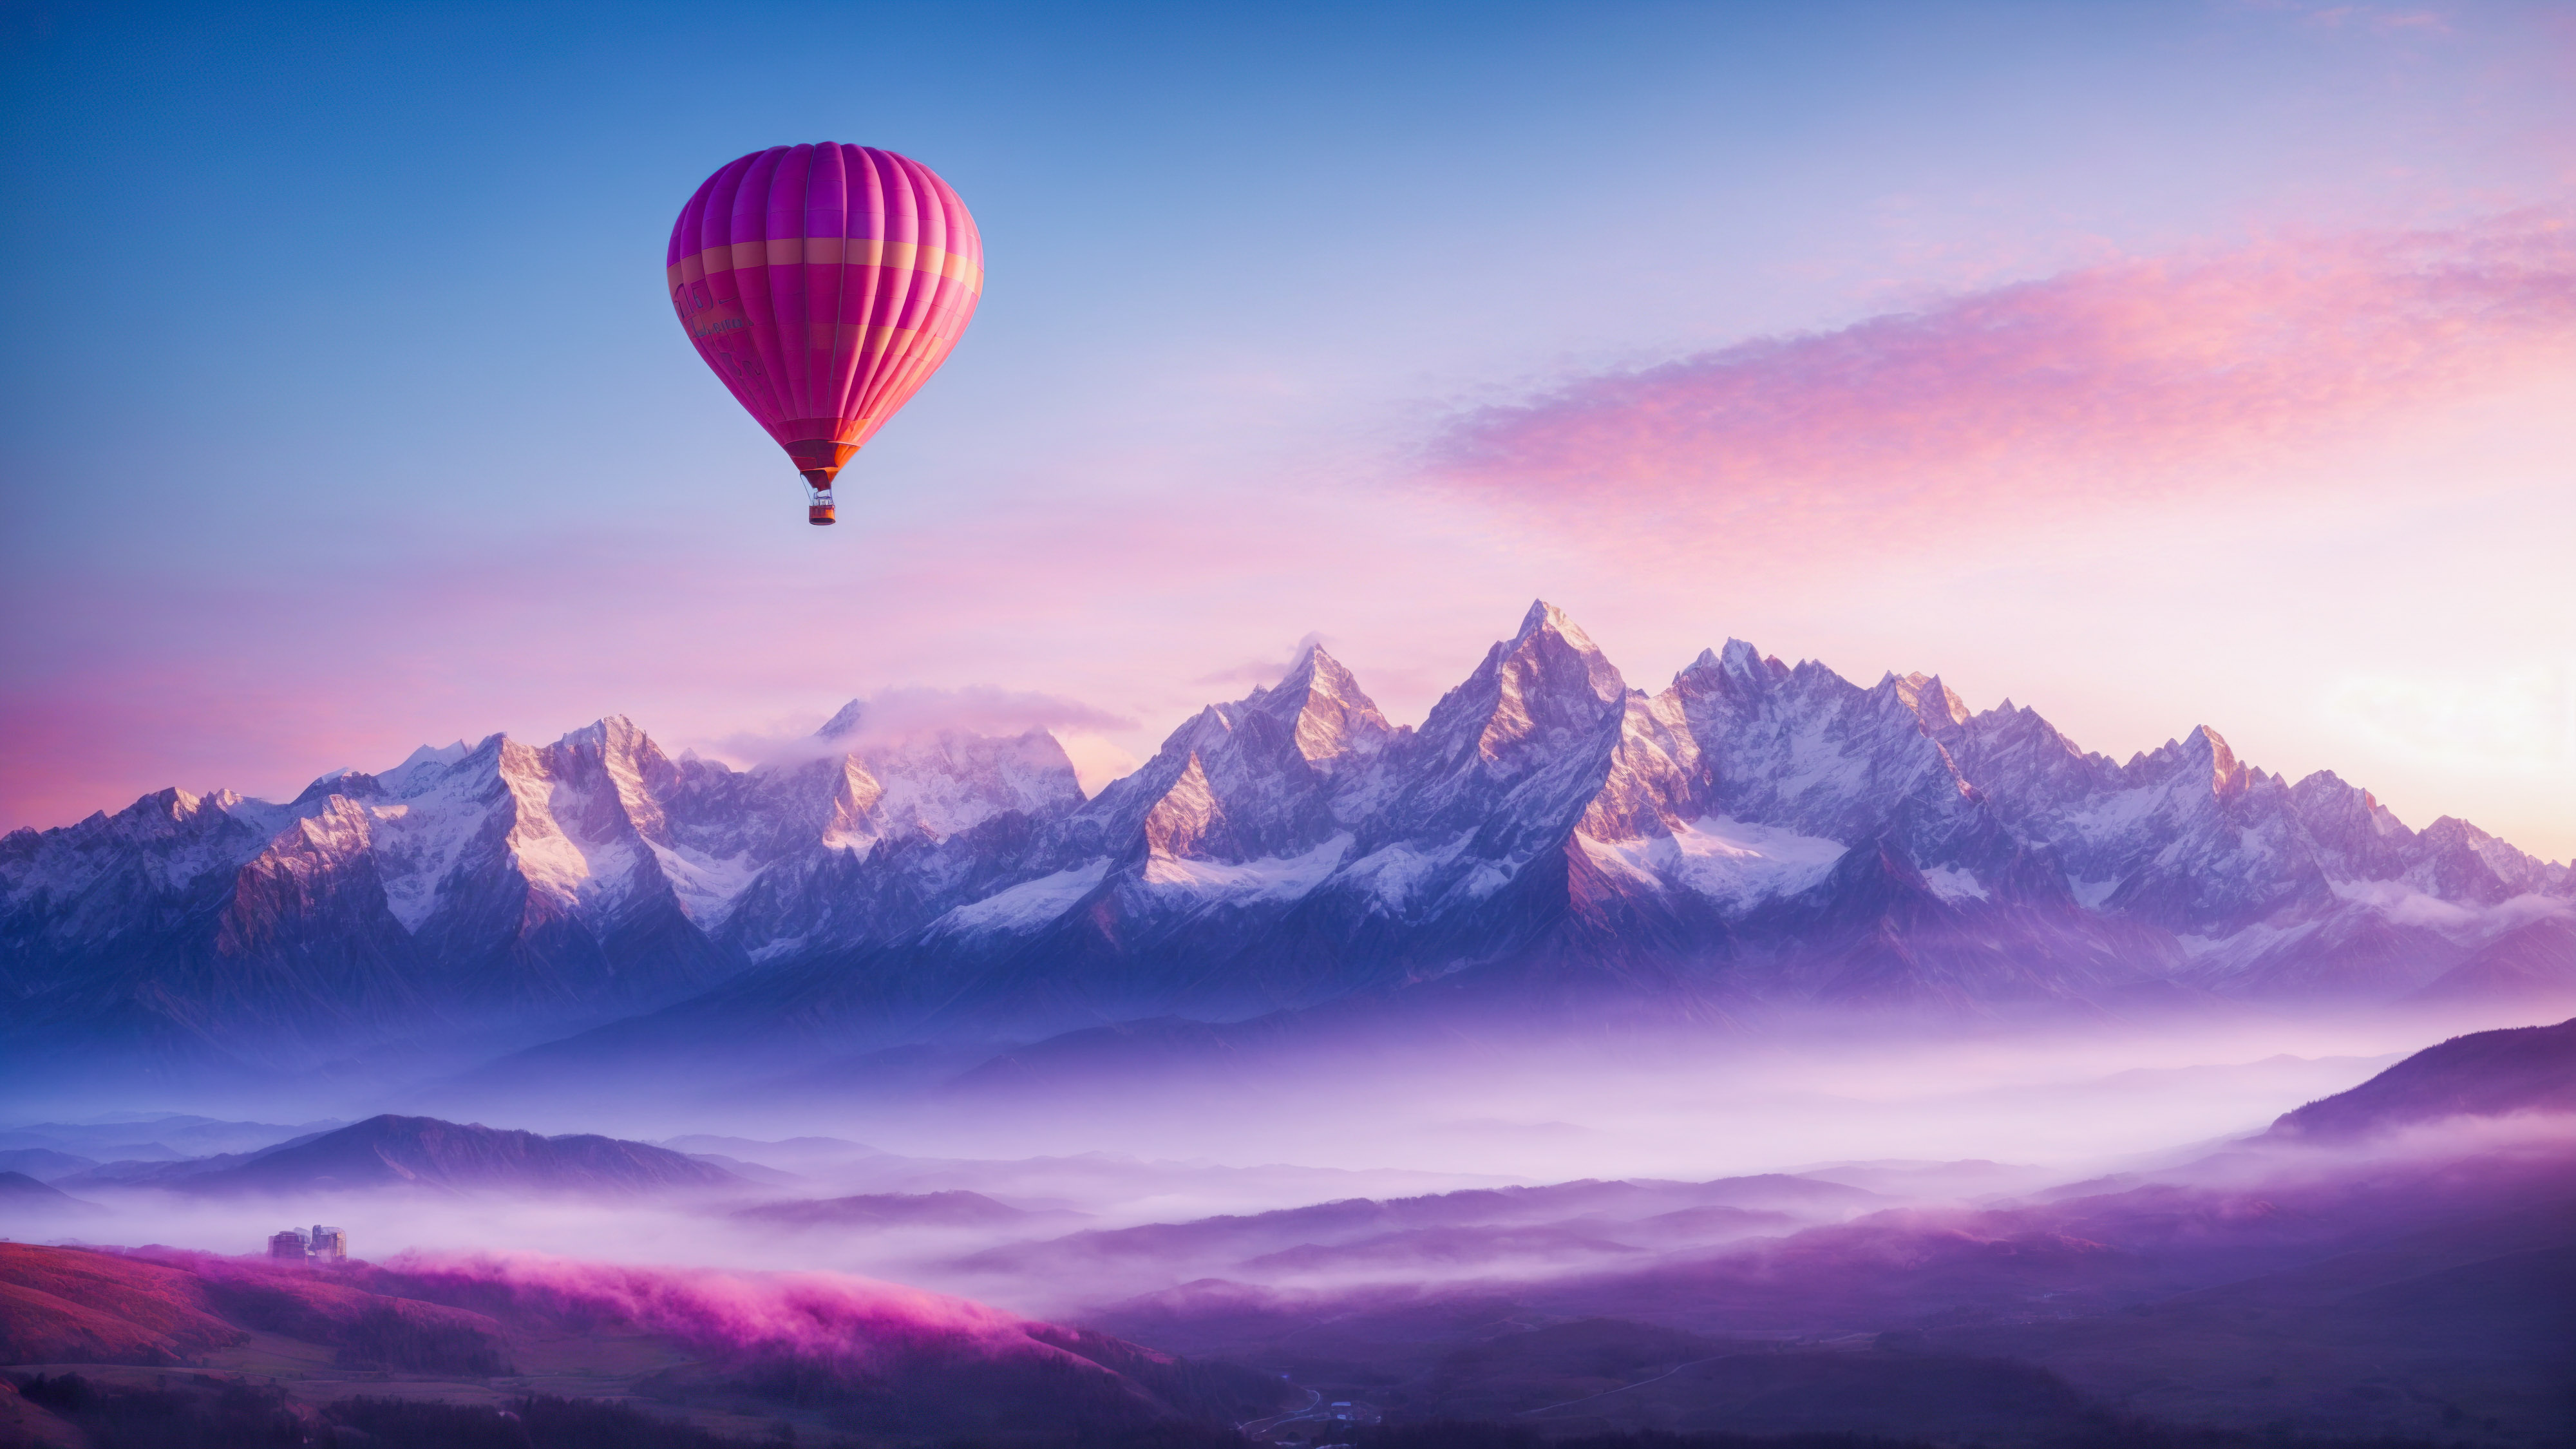 Témoignez de la beauté à couper le souffle d'un lever de soleil sur les montagnes, avec des teintes roses et bleues et une montgolfière volant dans le ciel, avec notre fond d'écran de montagne esthétique.